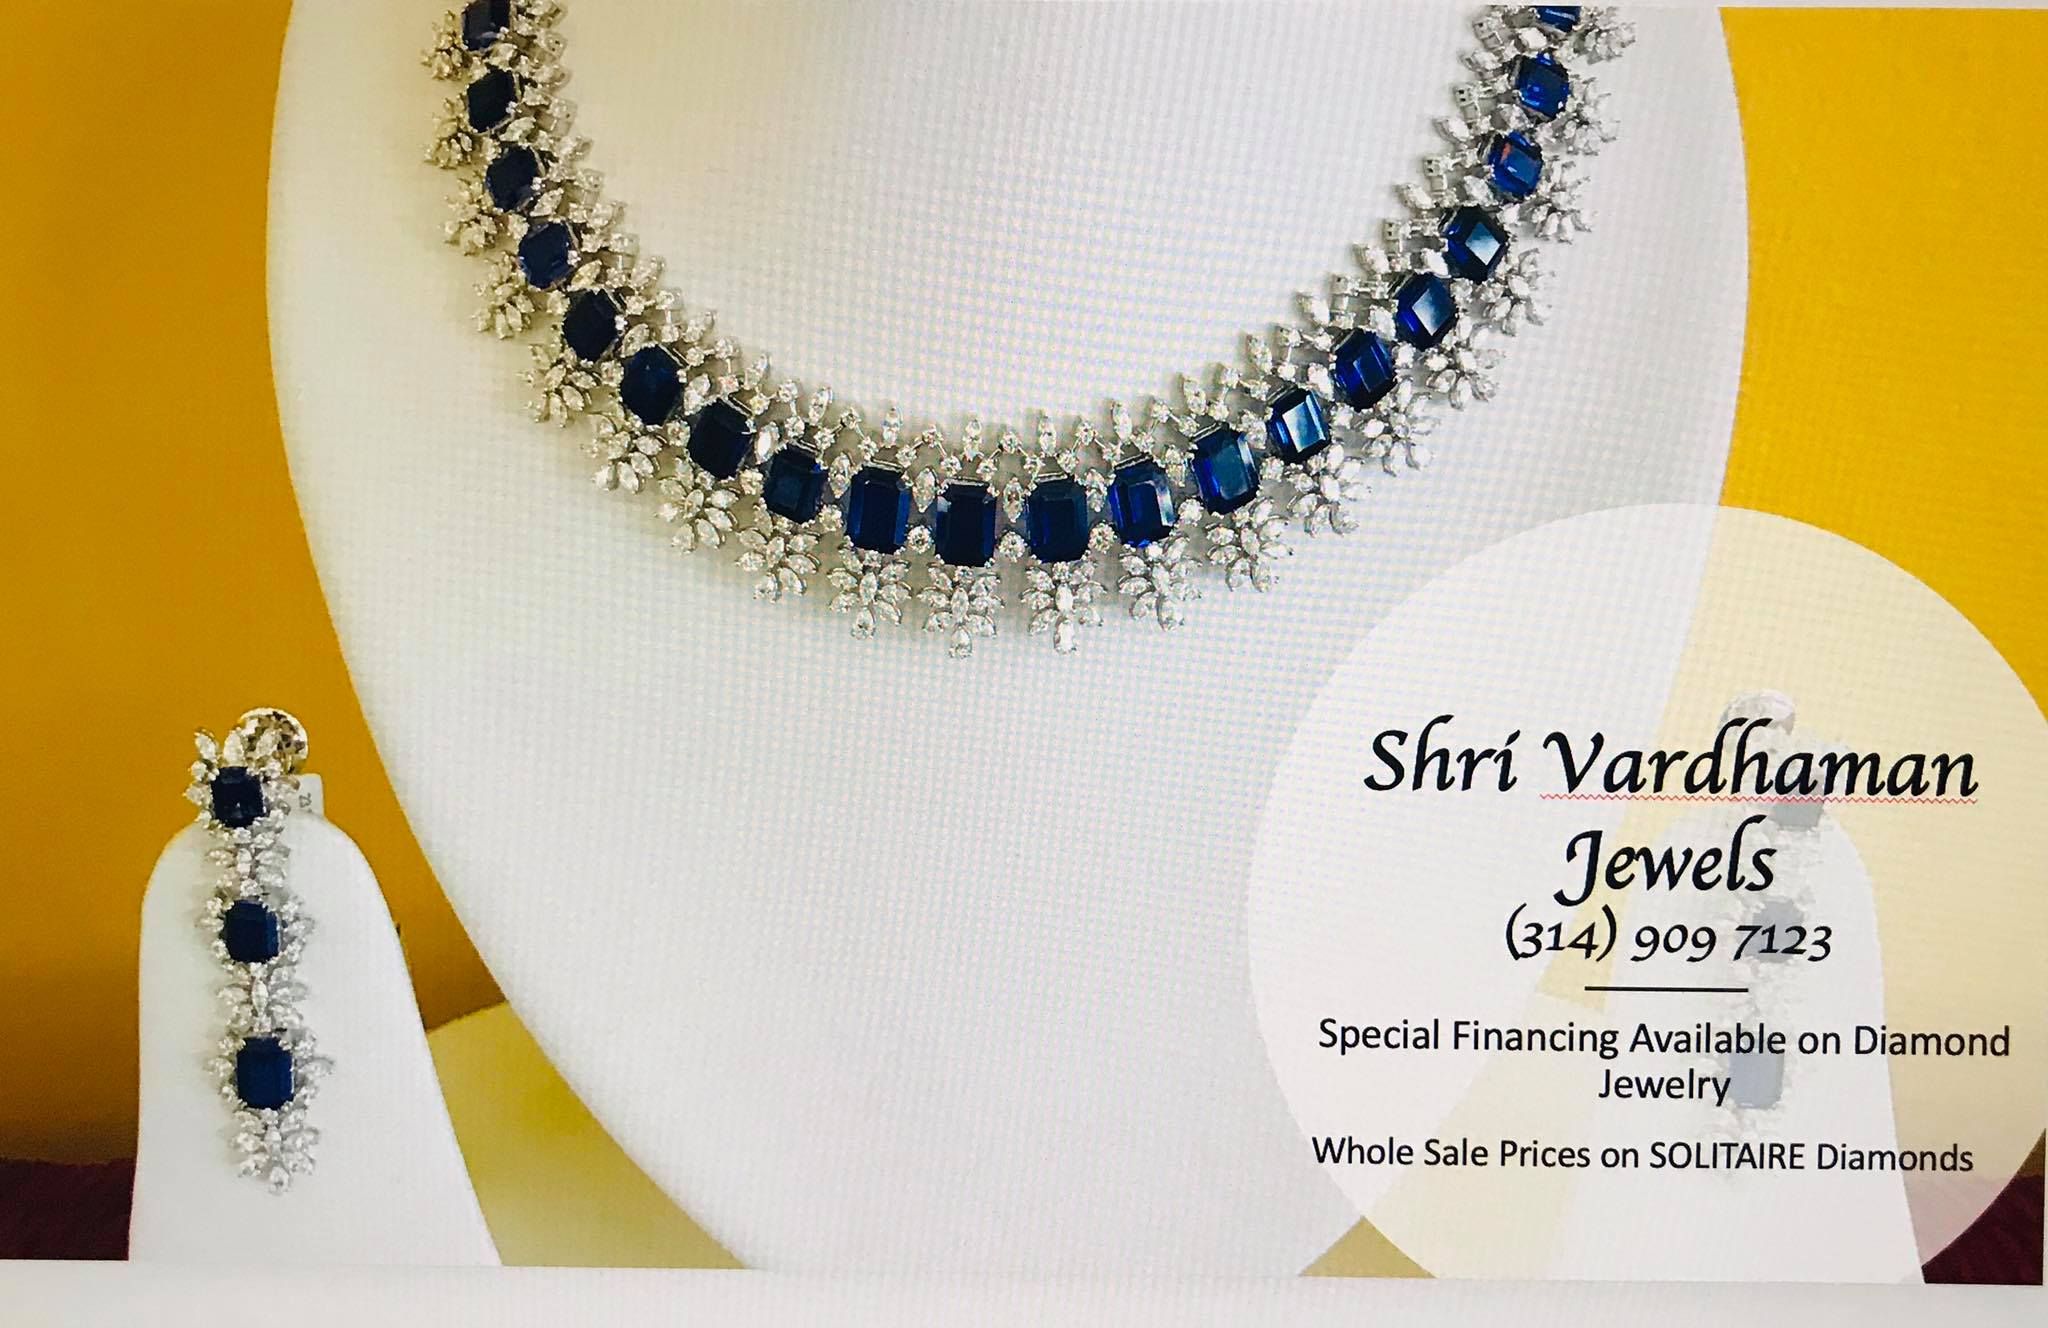 Shri Vardhaman Jewels